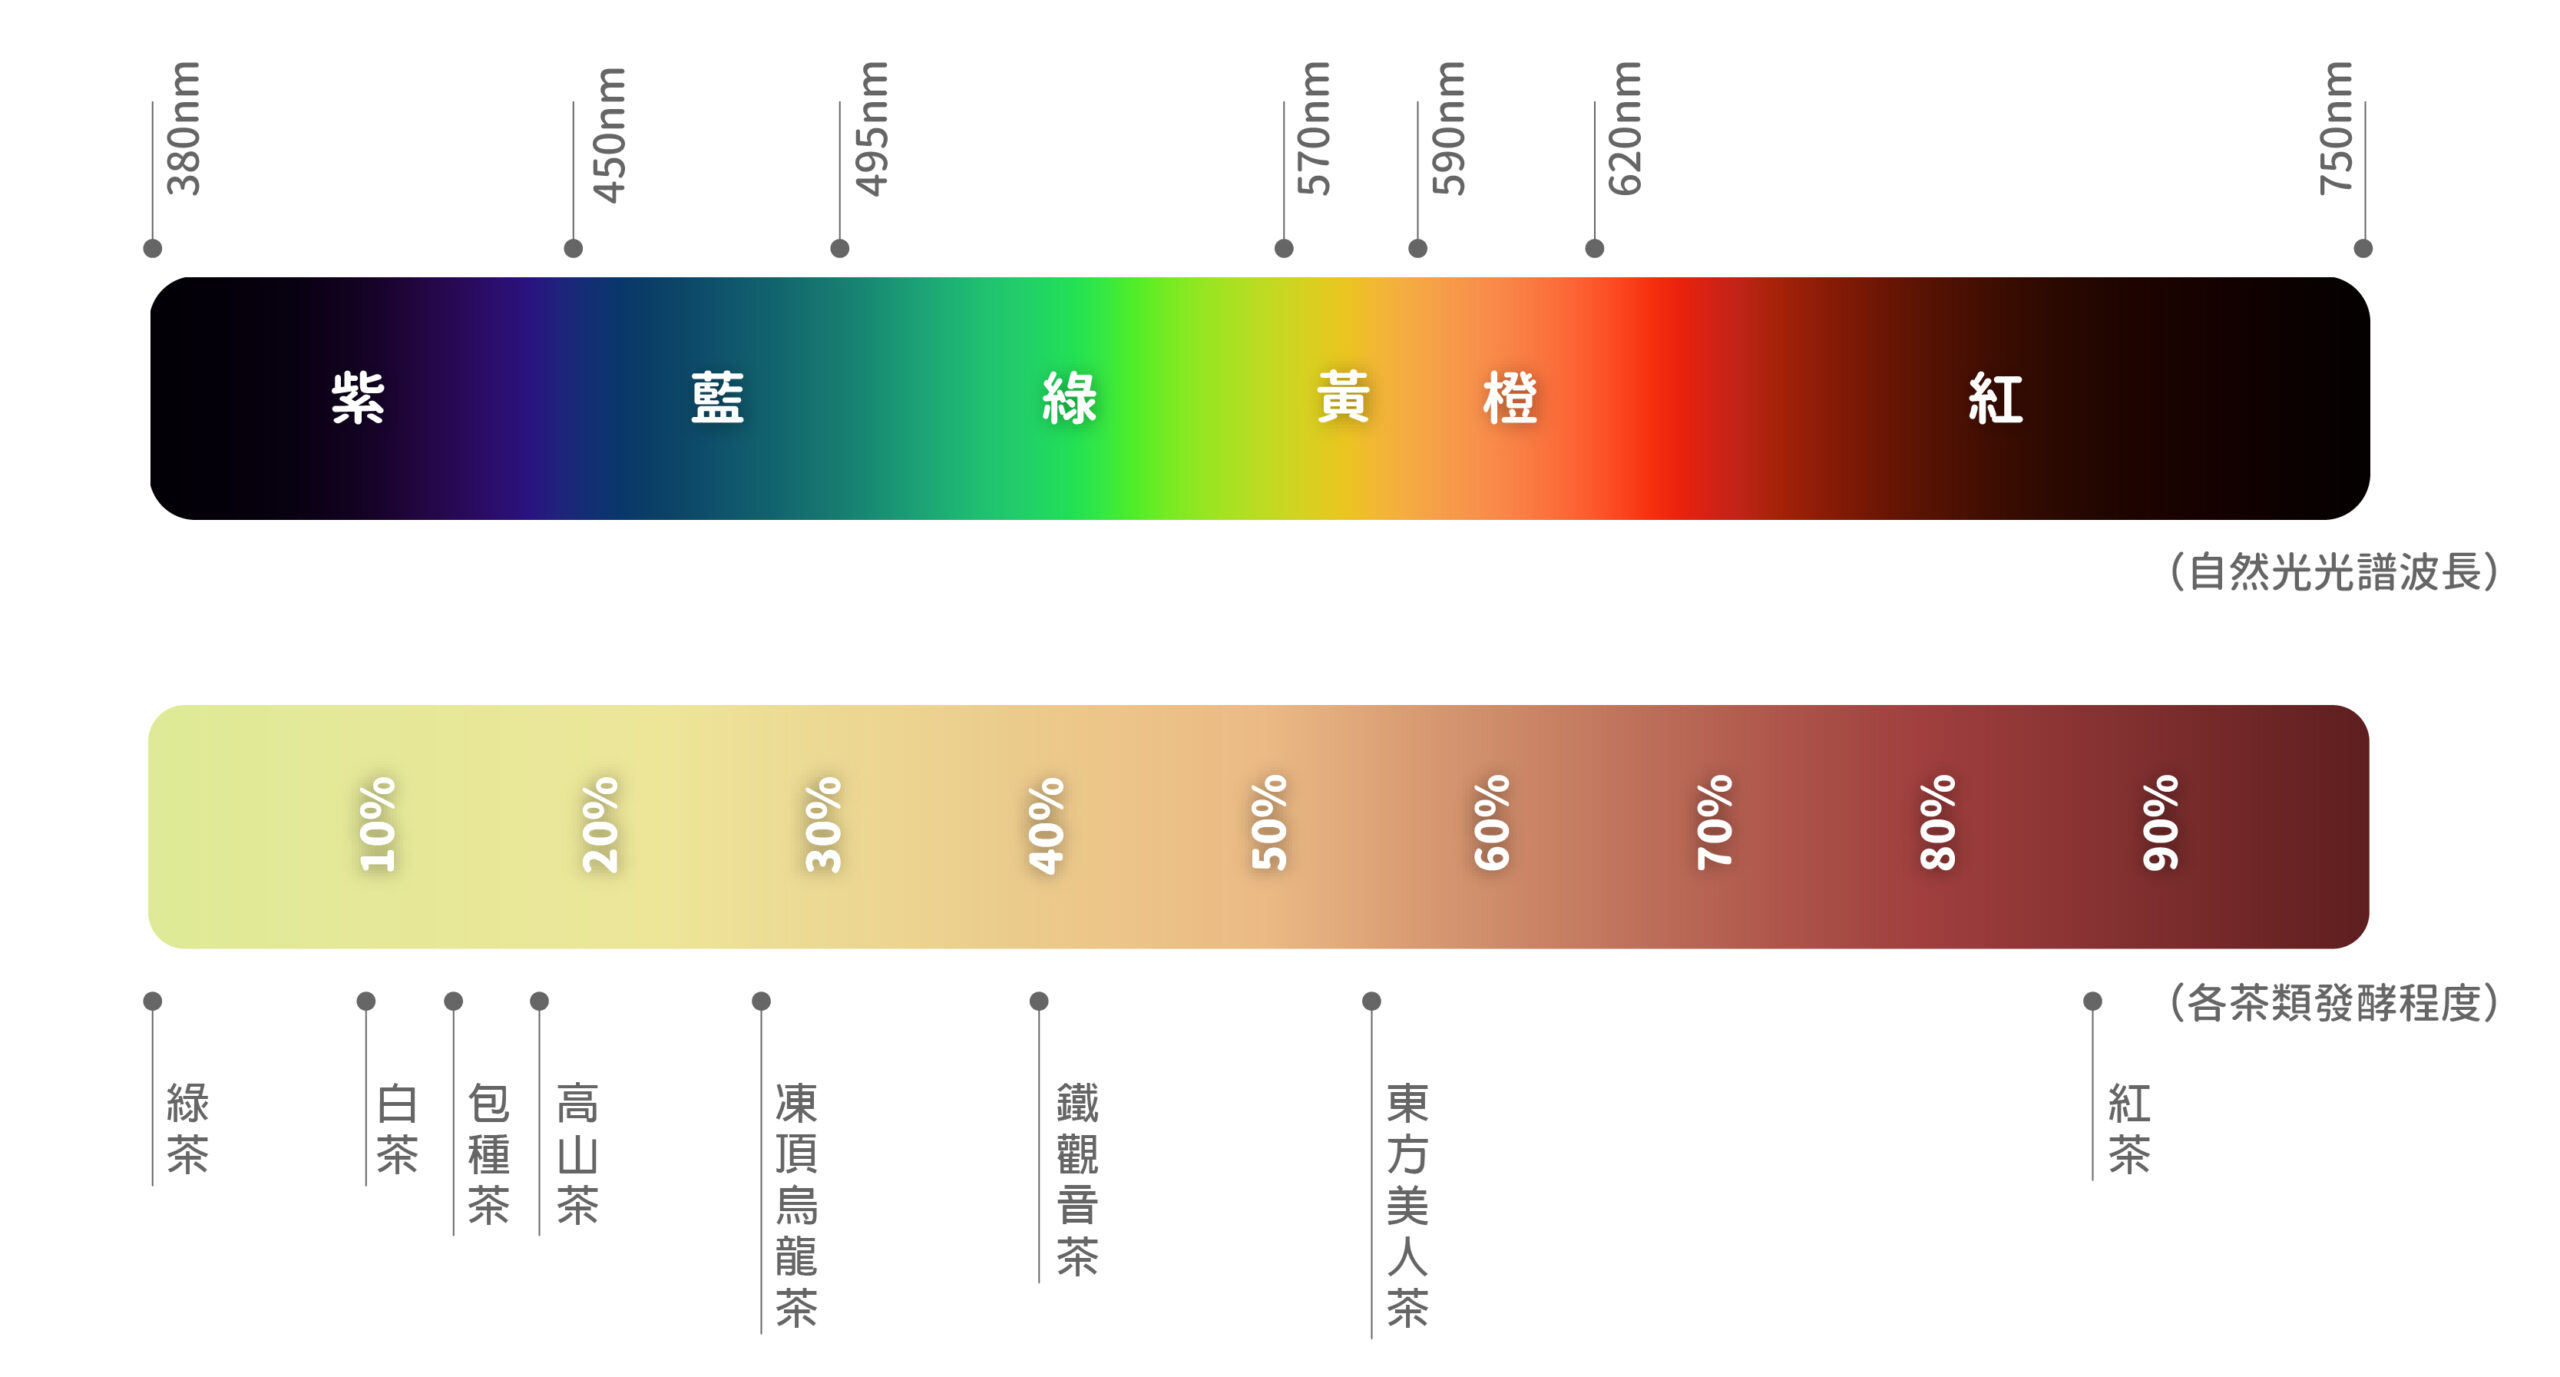 「光線波長與顏色分類」及「茶葉發酵度與茶品分類」對照圖 圖｜中央研究院民族學研究所博物館